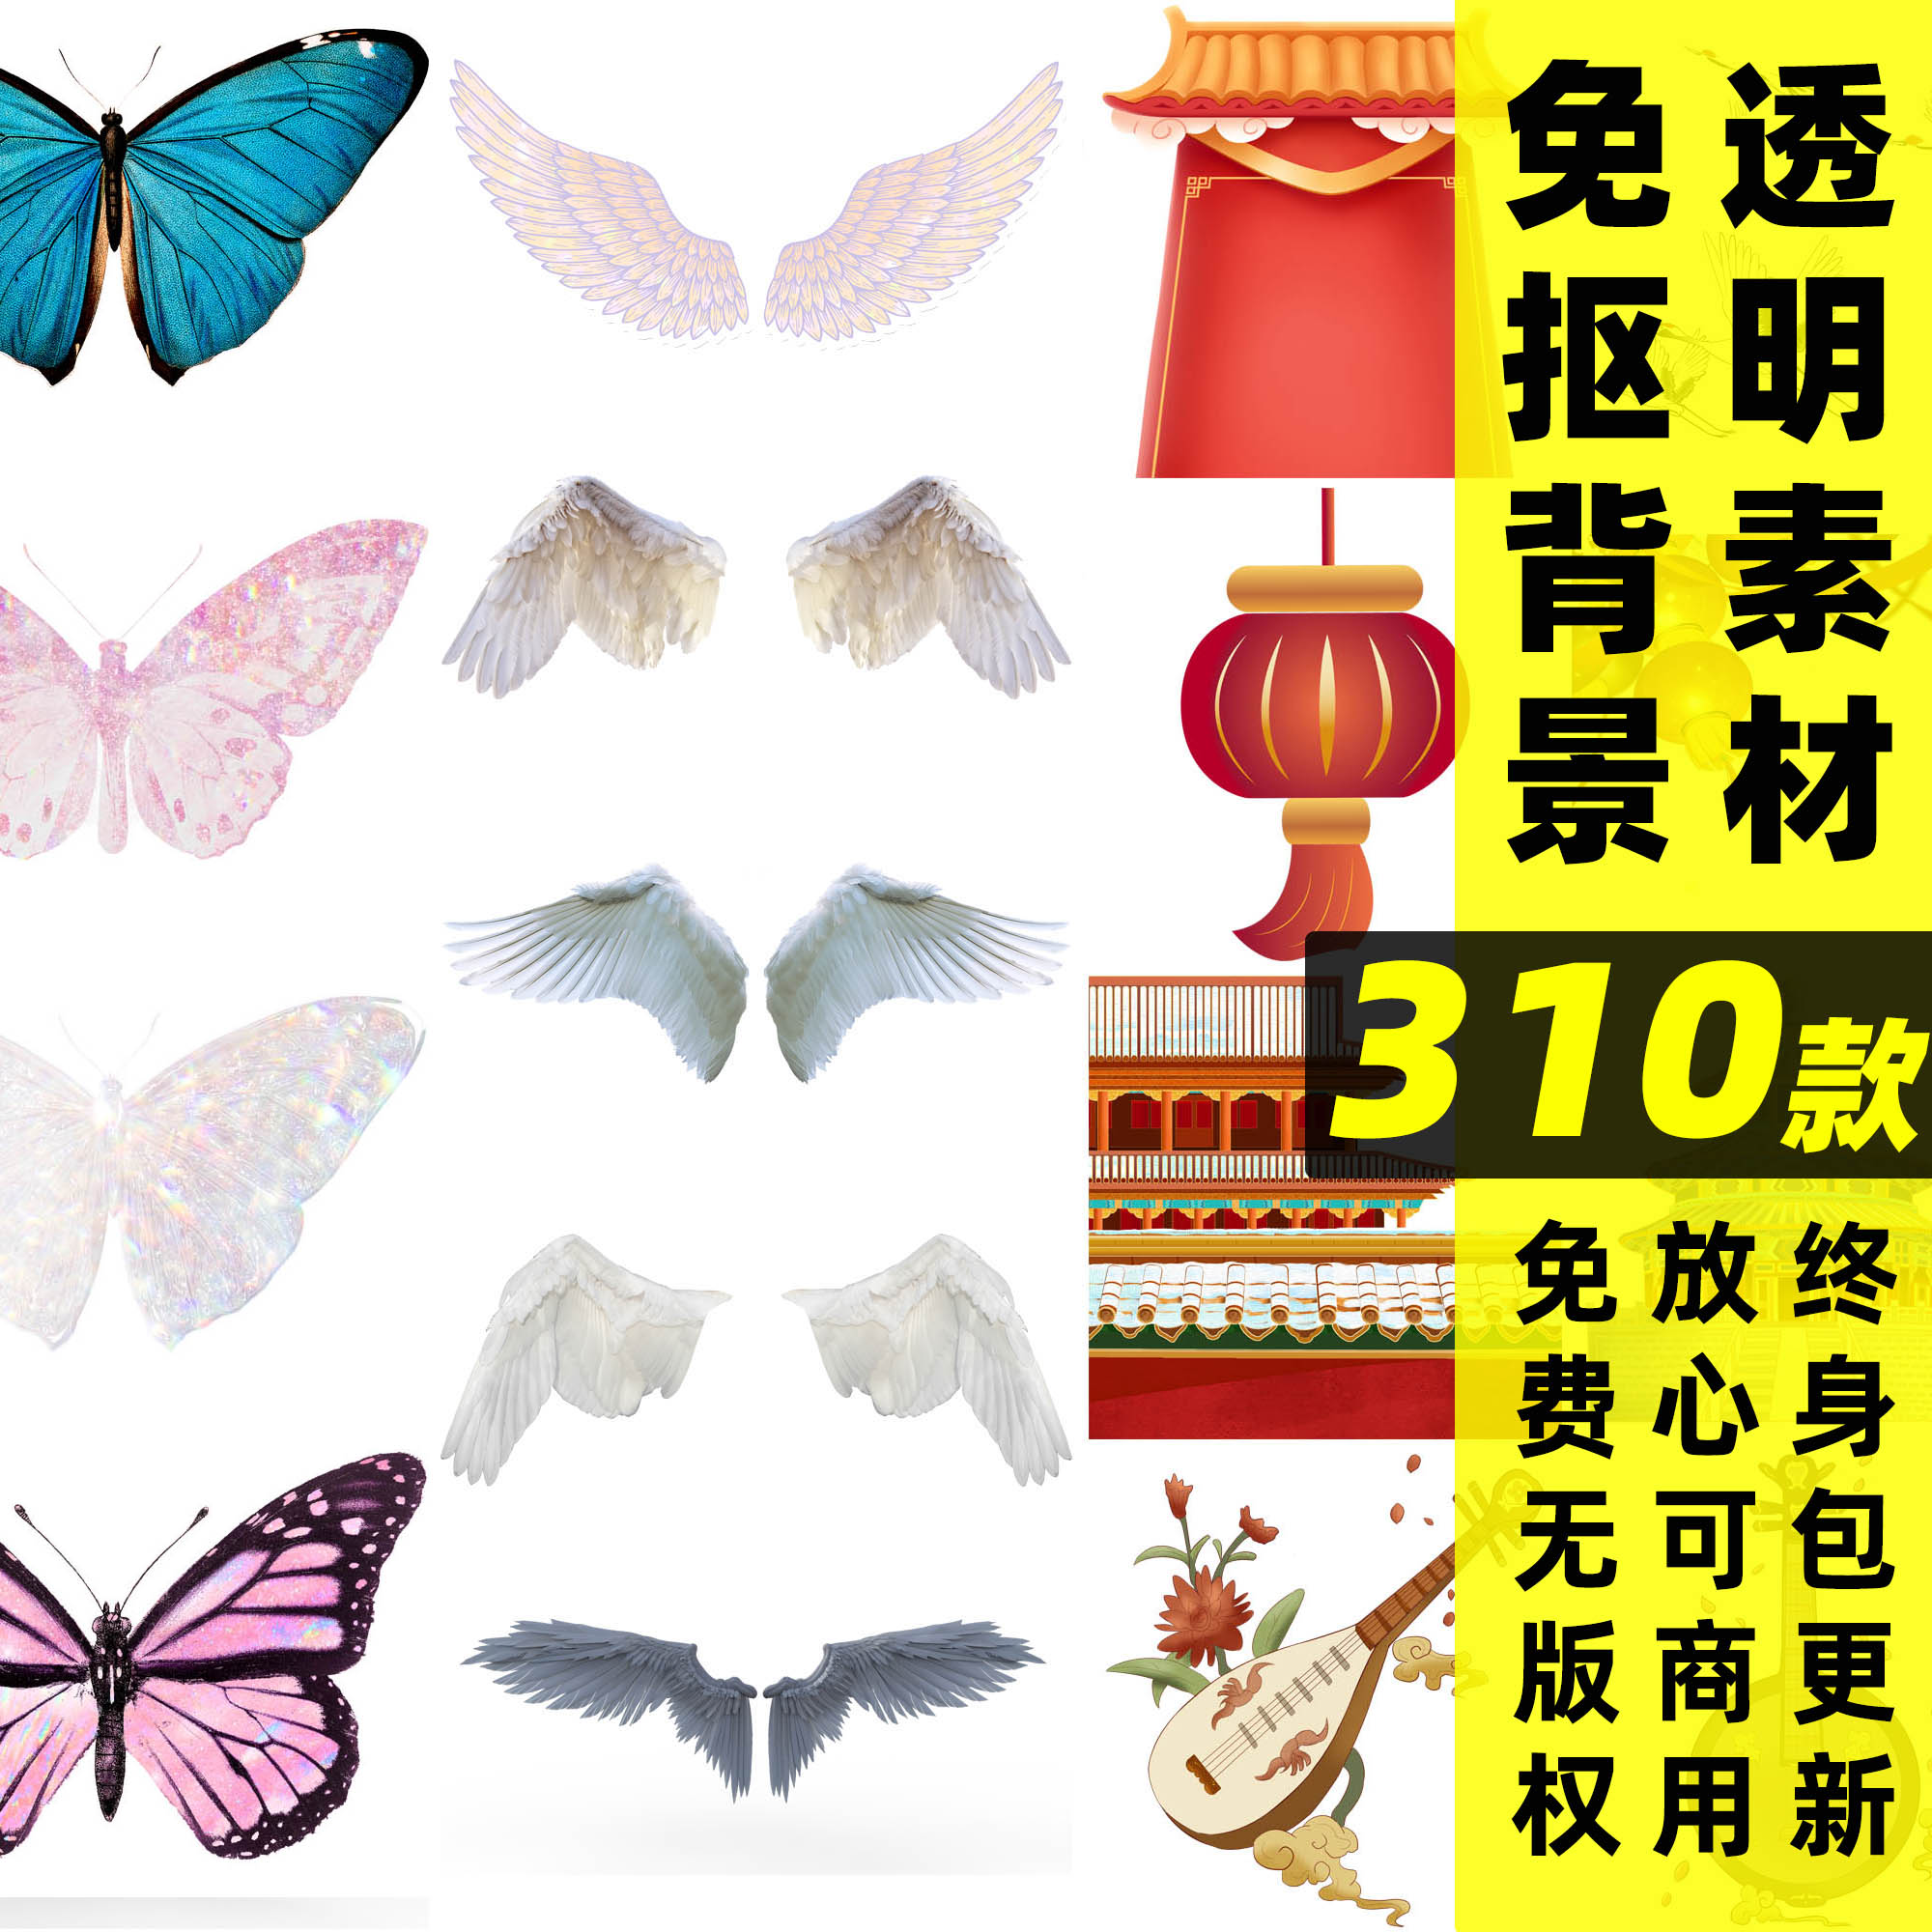 免抠素材丨可商用PNG免抠图片素材翅膀蝴蝶鲜花中国风剪切图片集